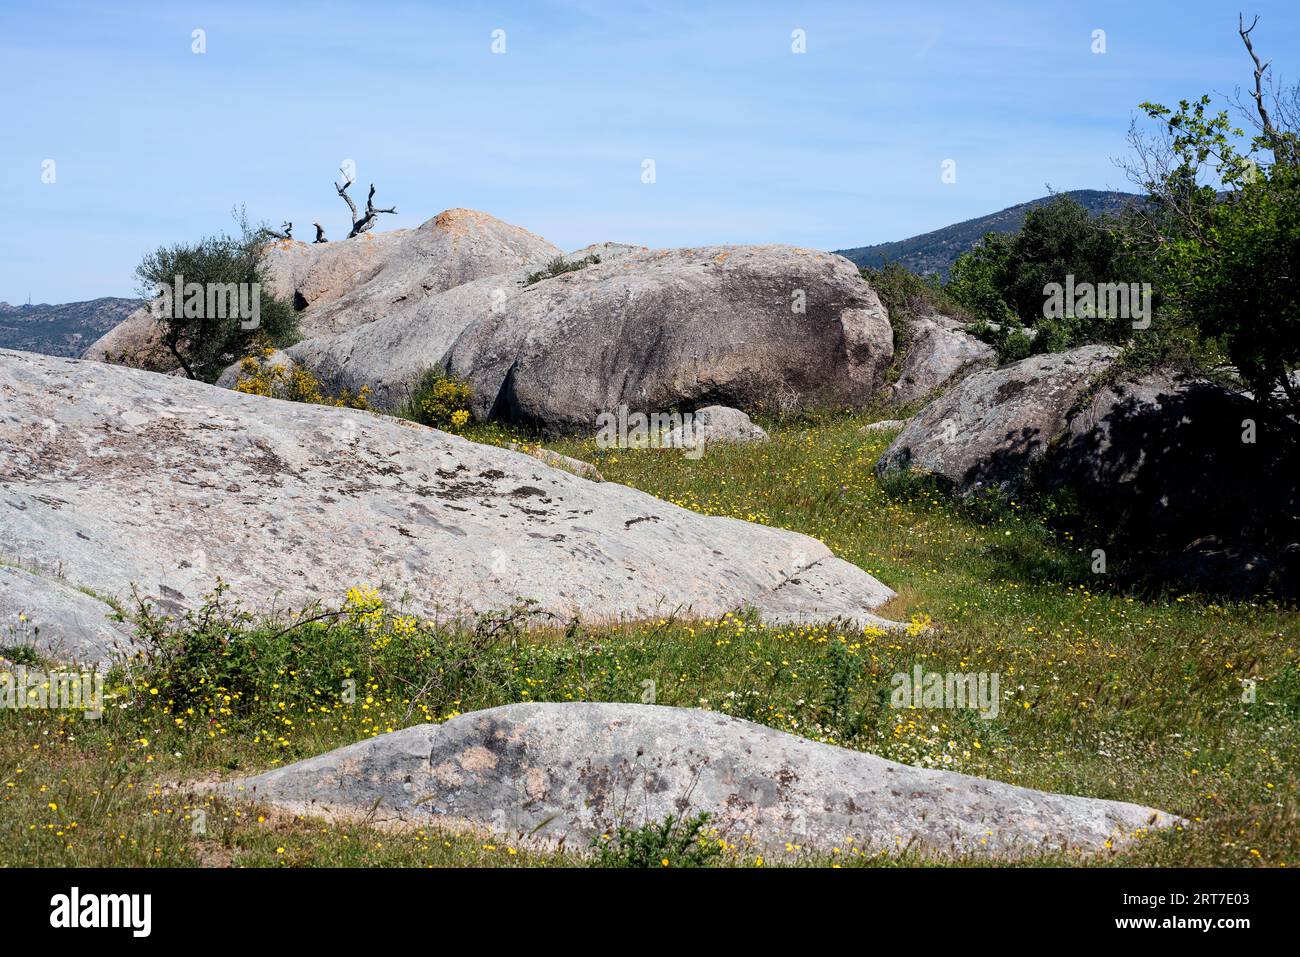 Granodiorit ist ein intrusives, granitähnliches Gestein. Dieses Foto wurde in Vilaut, Provinz Girona, Katalonien, Spanien aufgenommen. Stockfoto